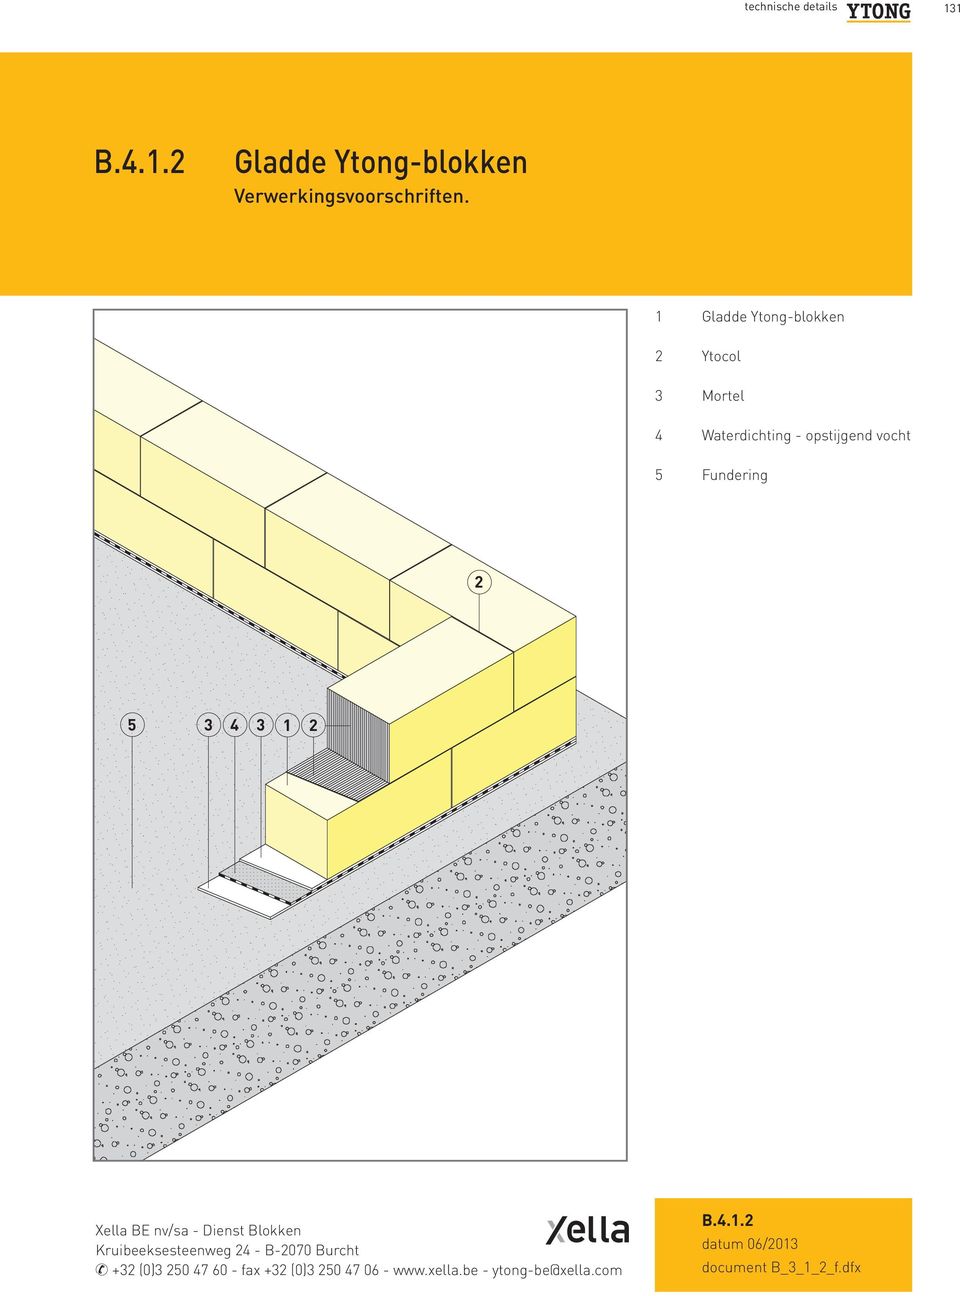 b4 technische details pdf free download